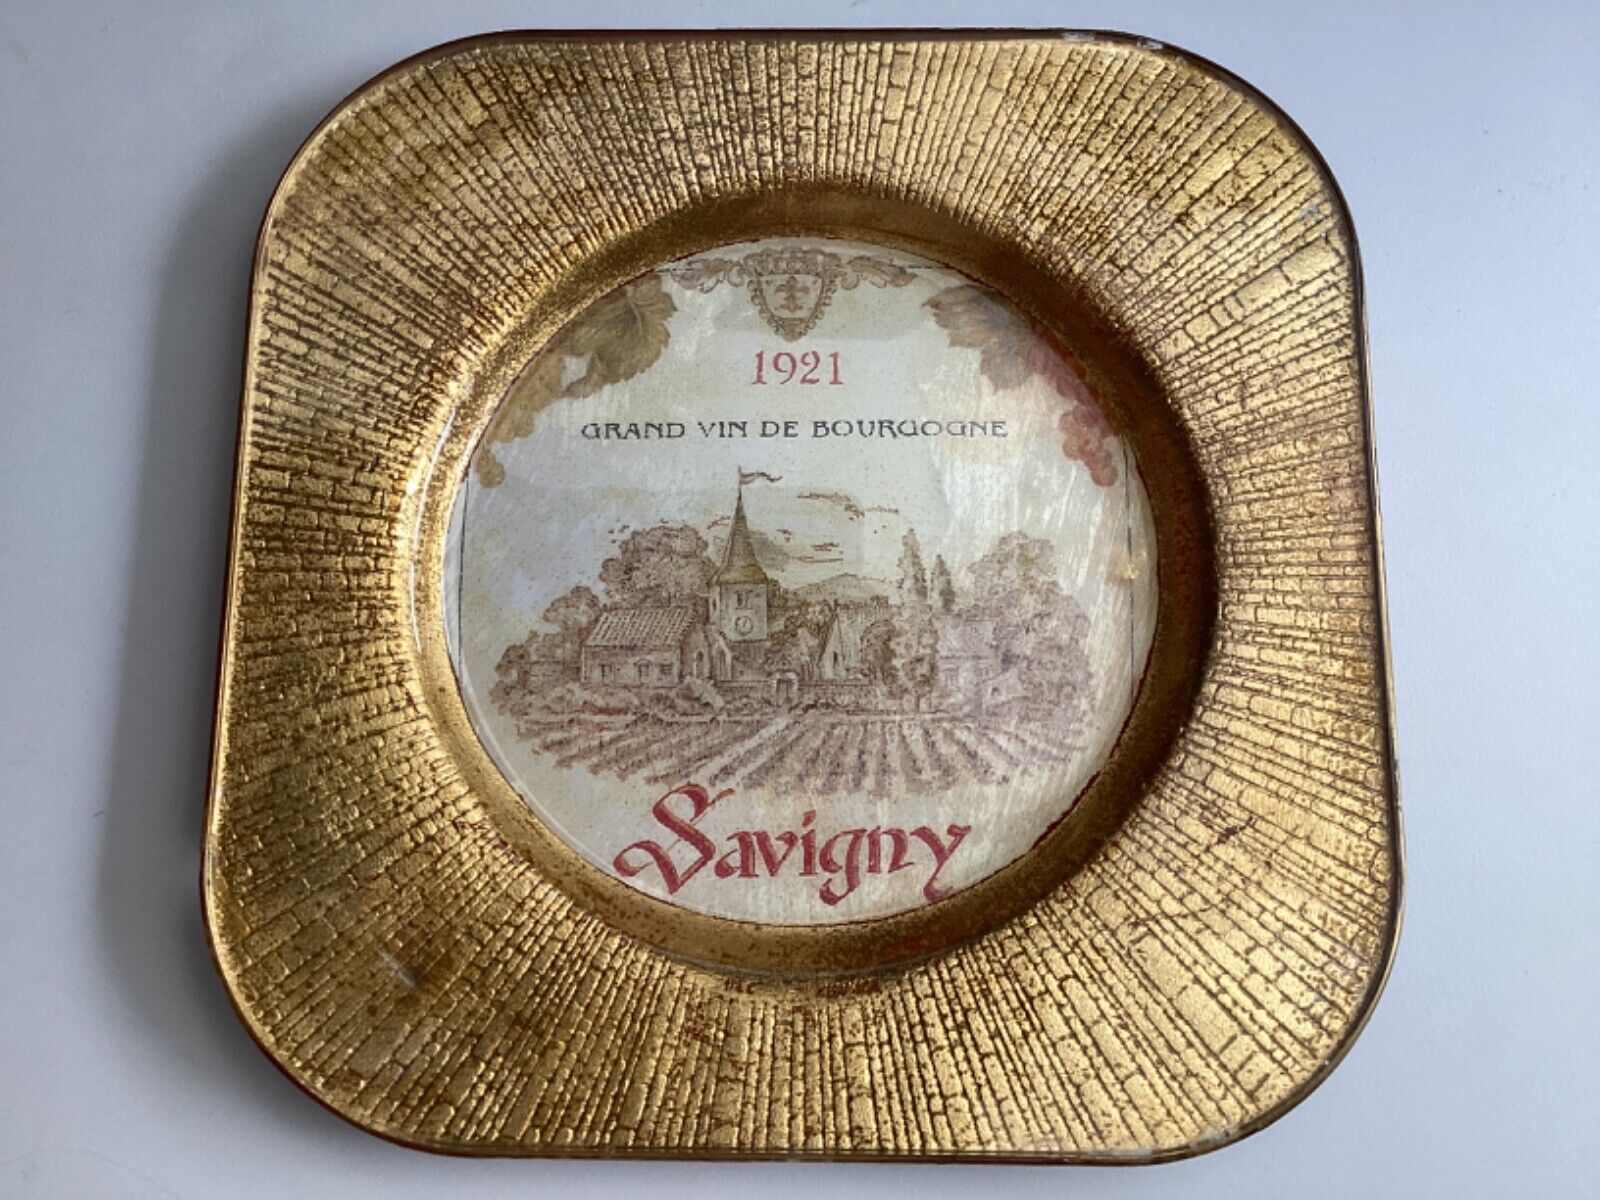 1921 Antique Handmade Grand Vin de Bourgogne Savigny Decorative Wall Plate *